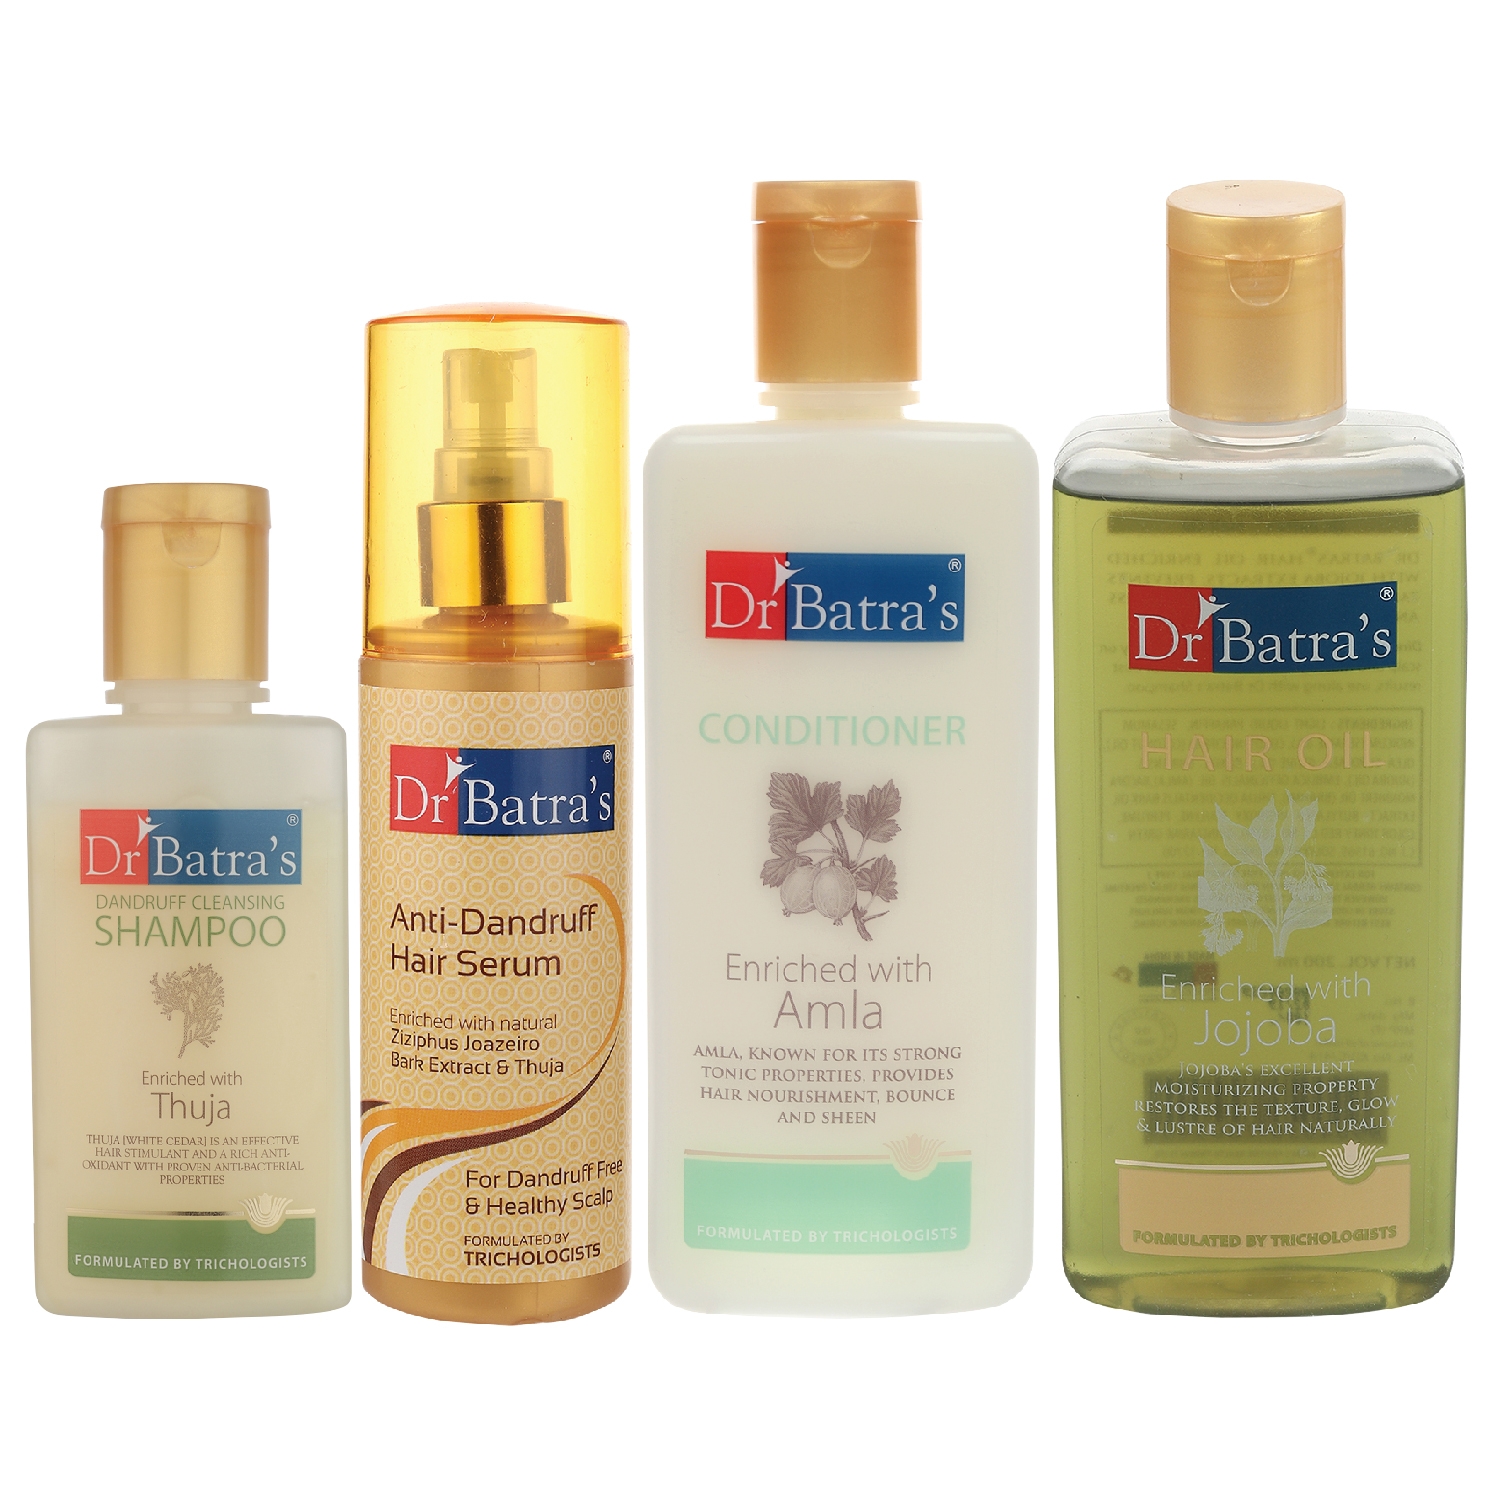 Dr Batra's | Dr Batra's Anti Dandruff Hair Serum, Conditioner - 200 ml, Hair Oil - 200 ml and Dandruff Cleansing Shampoo - 100 ml